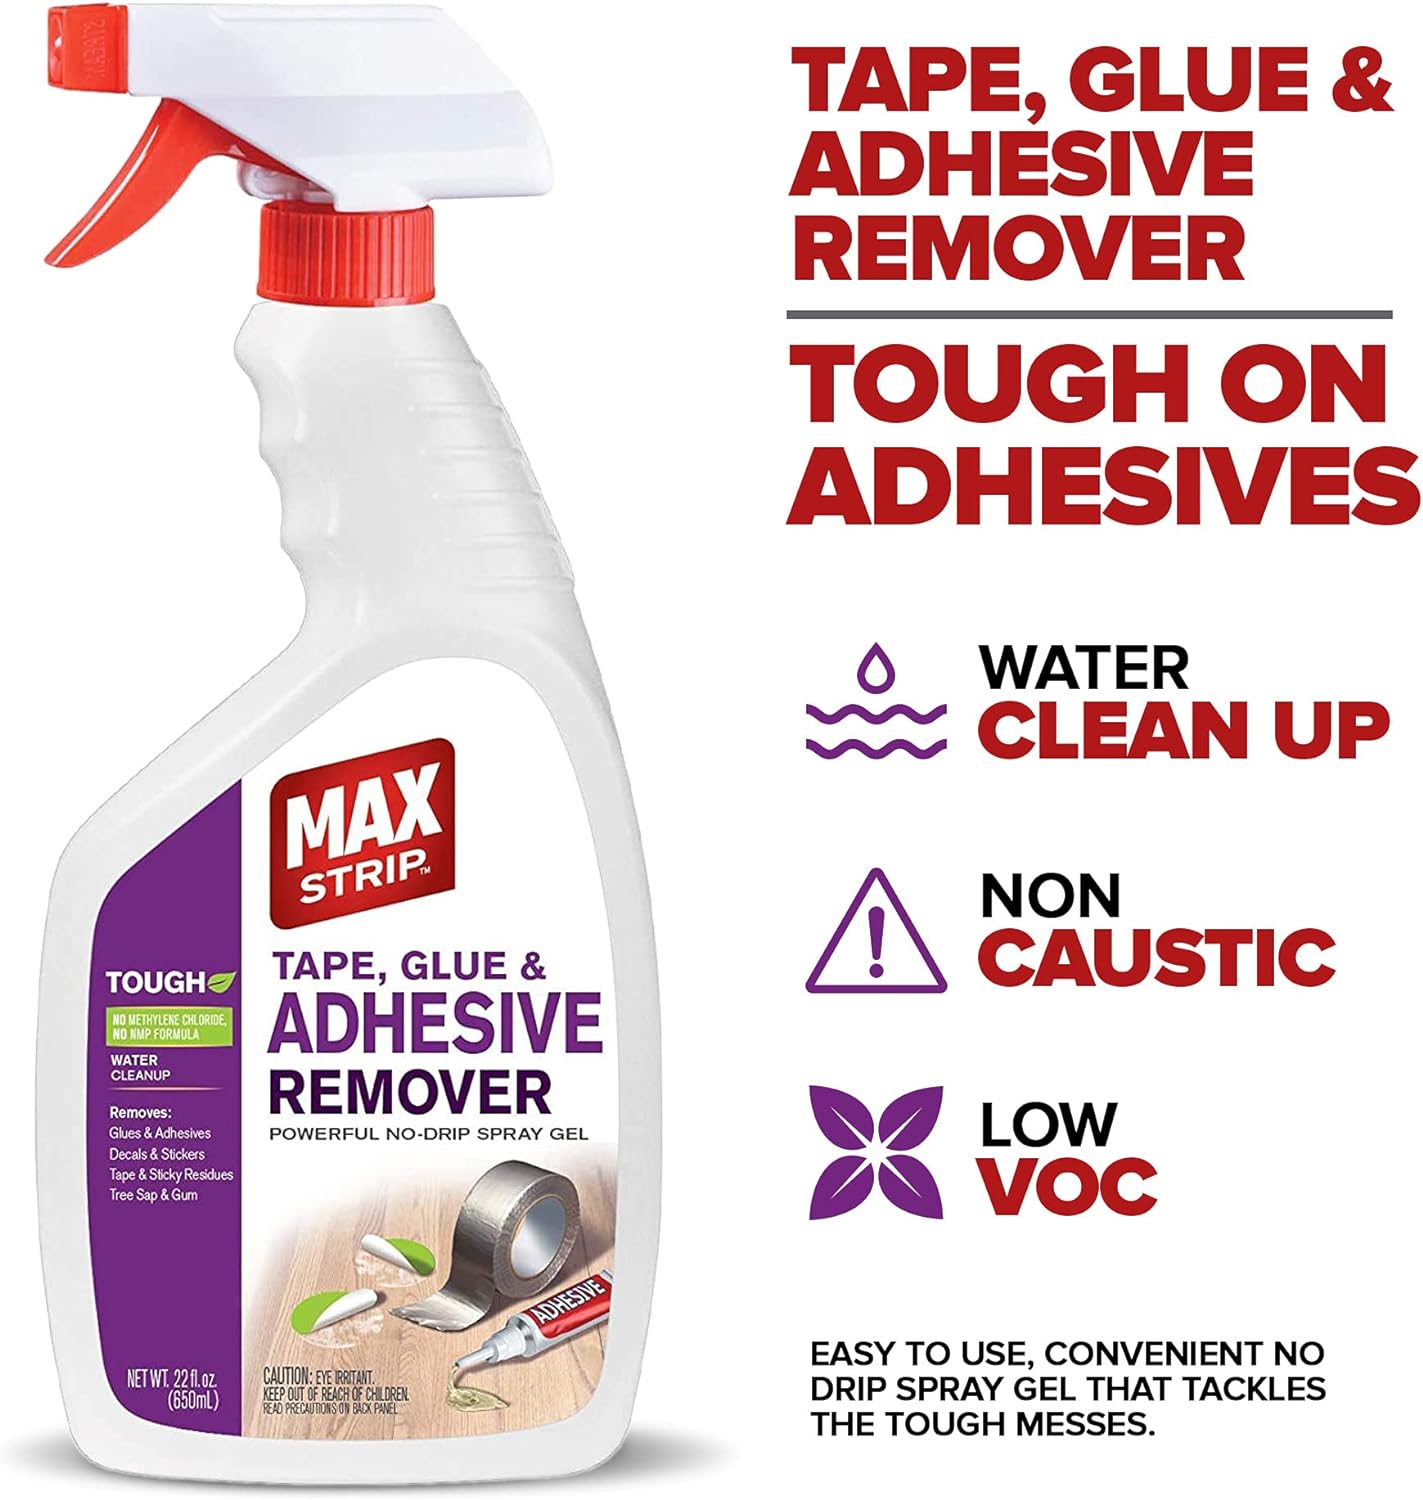 Max Strip Tape, Glue & Adhesive Remover 22 oz